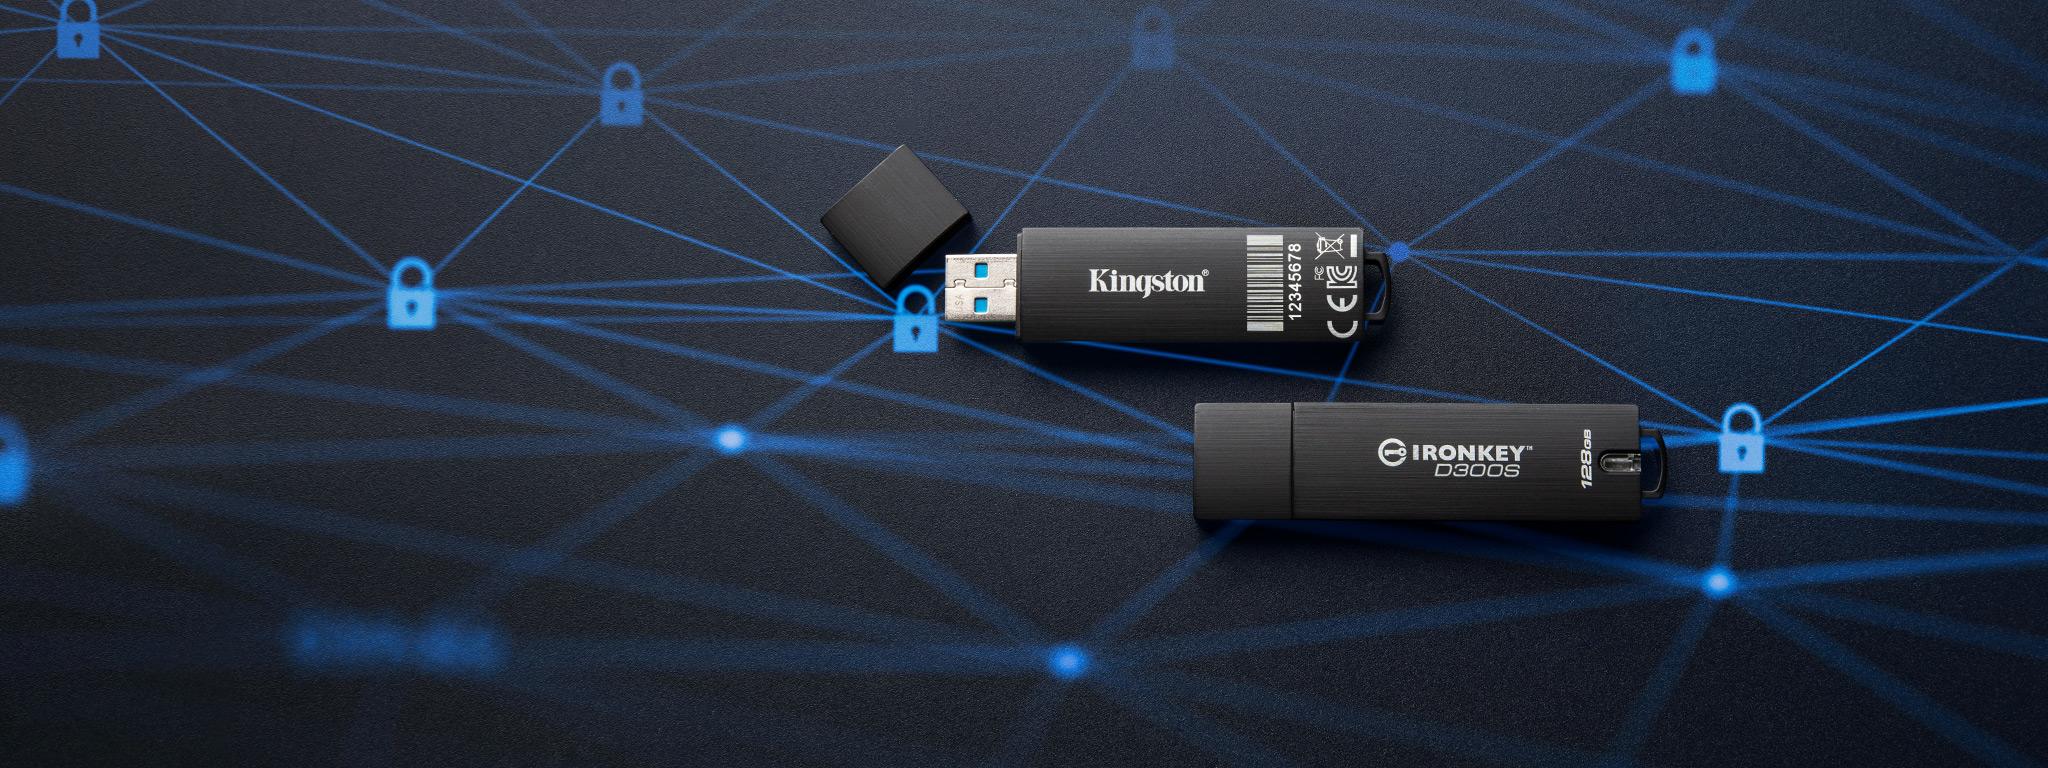 IronKey D300S แฟลชไดรฟ์ USB คู่หนึ่งวางอยู่บนพื้นผิวสีดำที่มีภาพไอคอนรูปแม่กุญแจสีน้ำเงิน